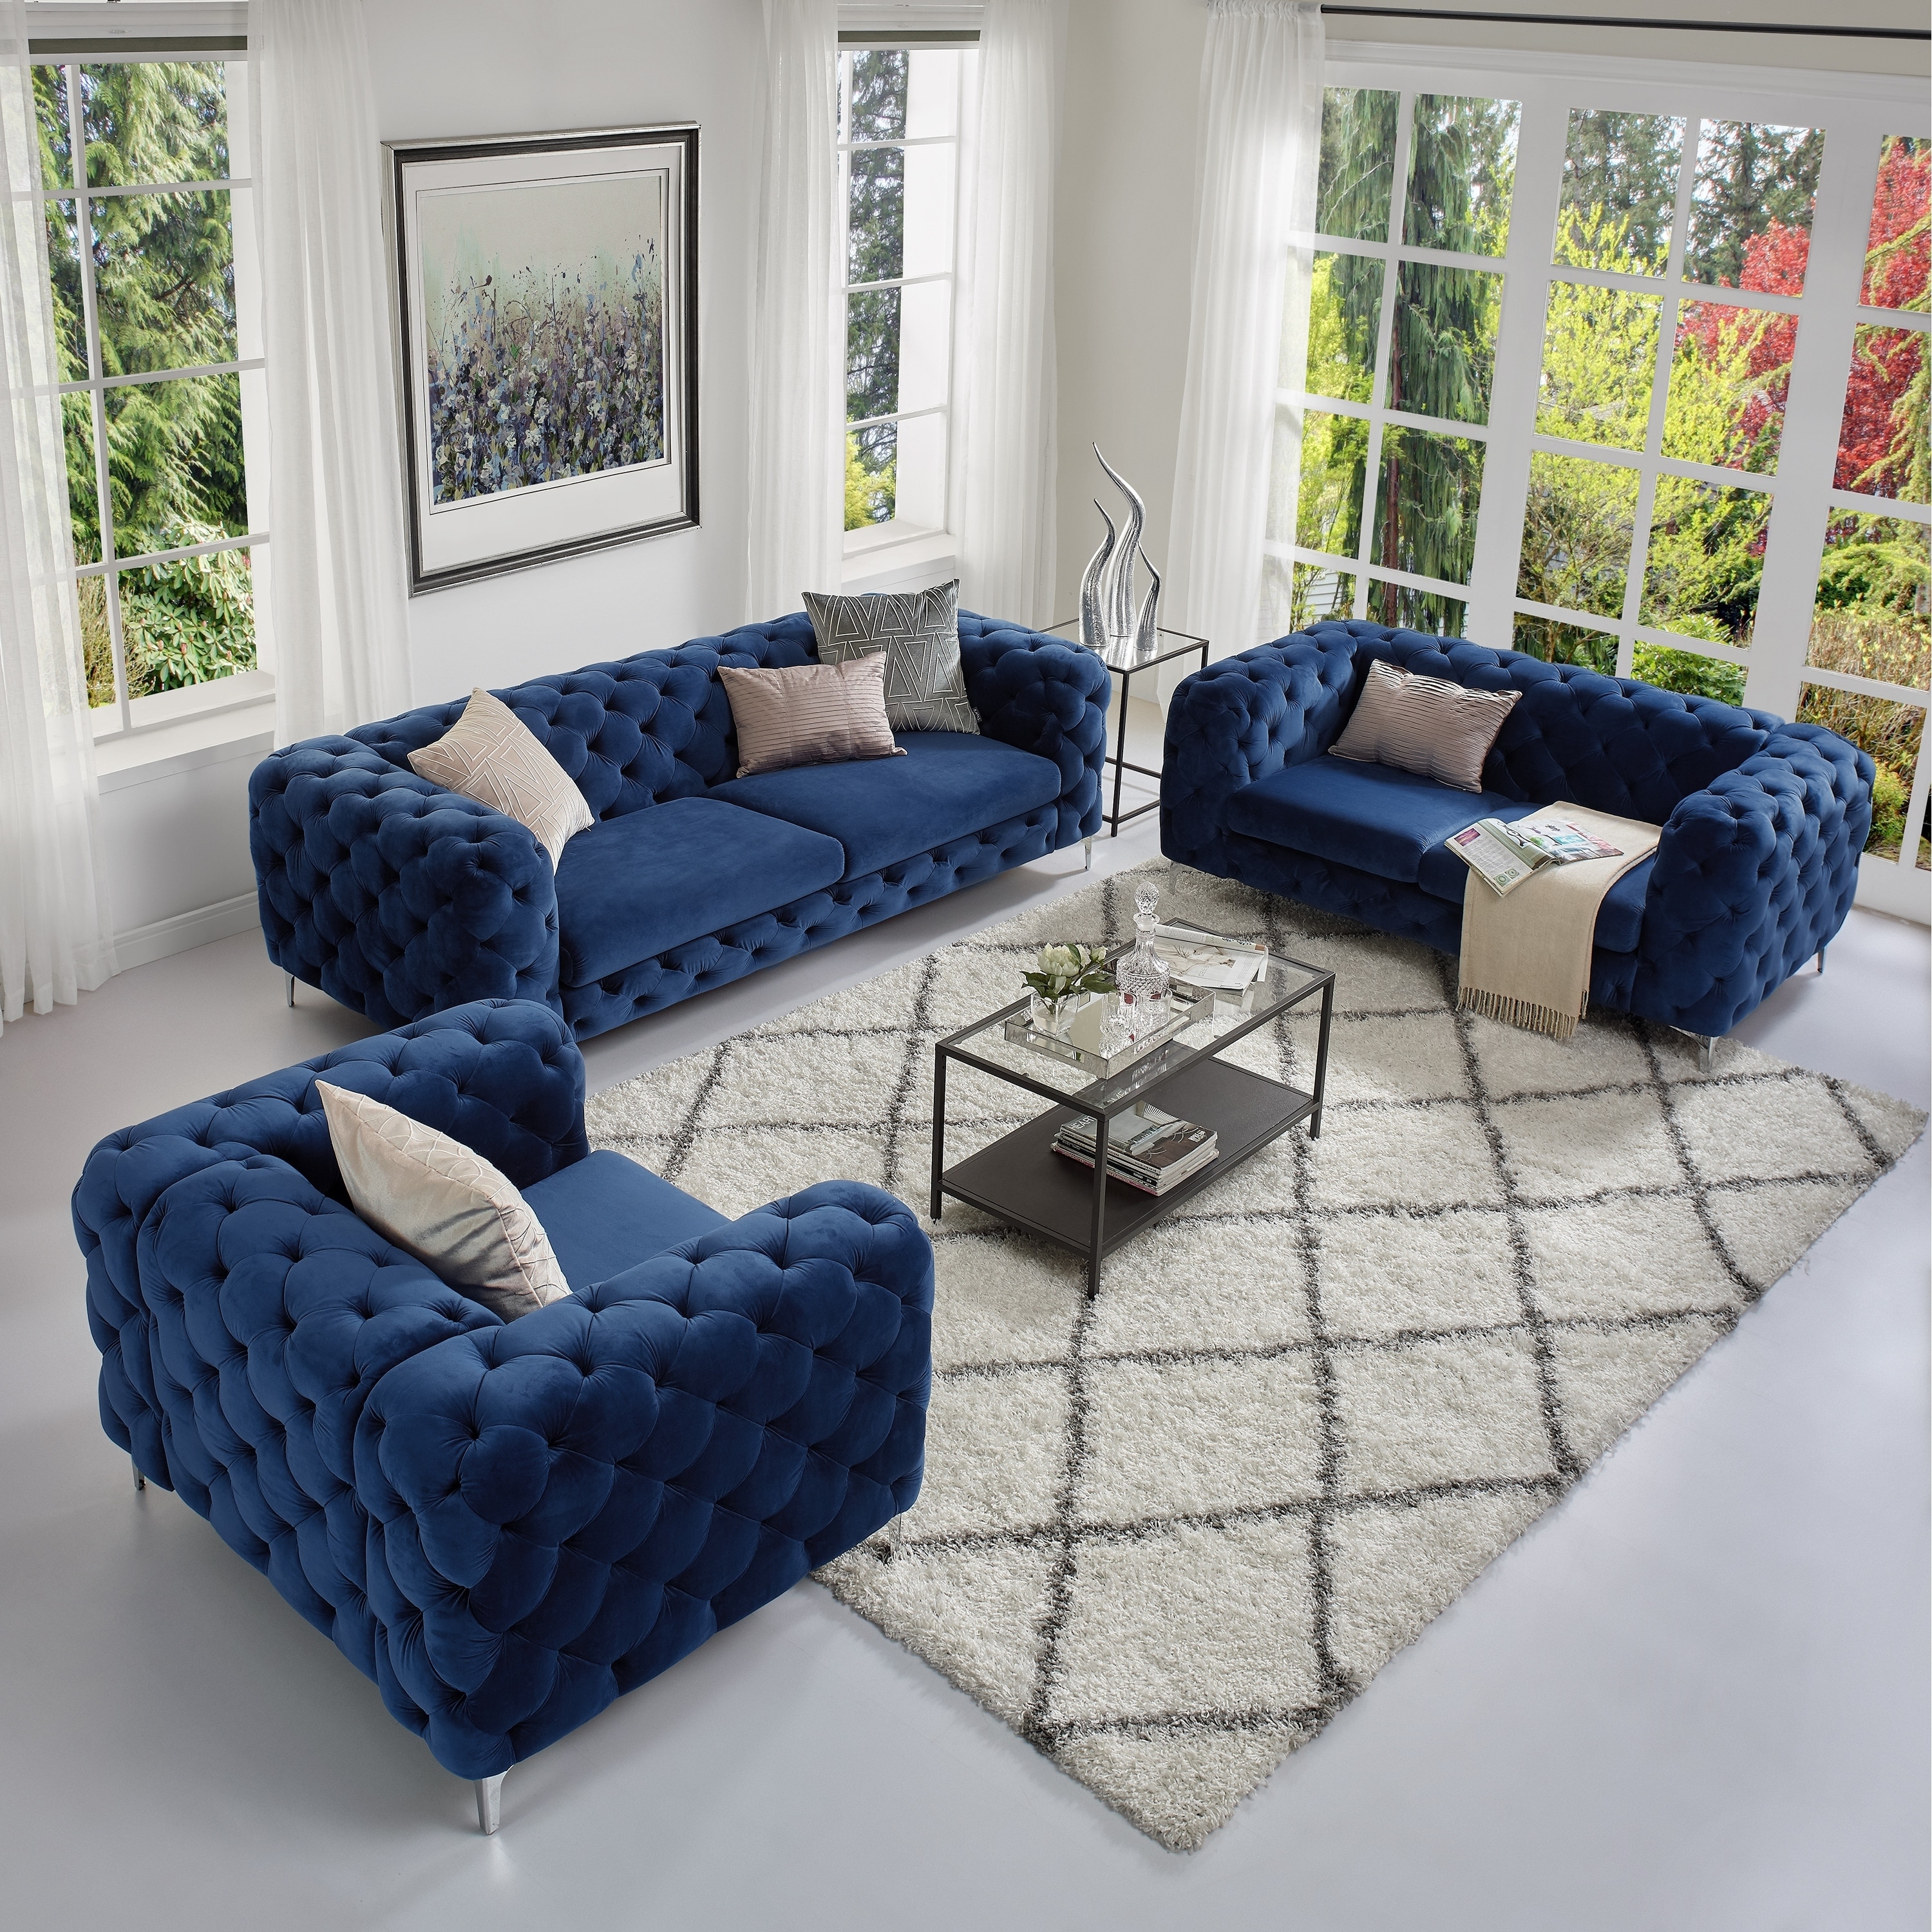 Corvus Aosta Tufted Velvet Loveseat And Sofa Living Room Chesterfield Set On Sale Overstock 21029535 Navy Blue